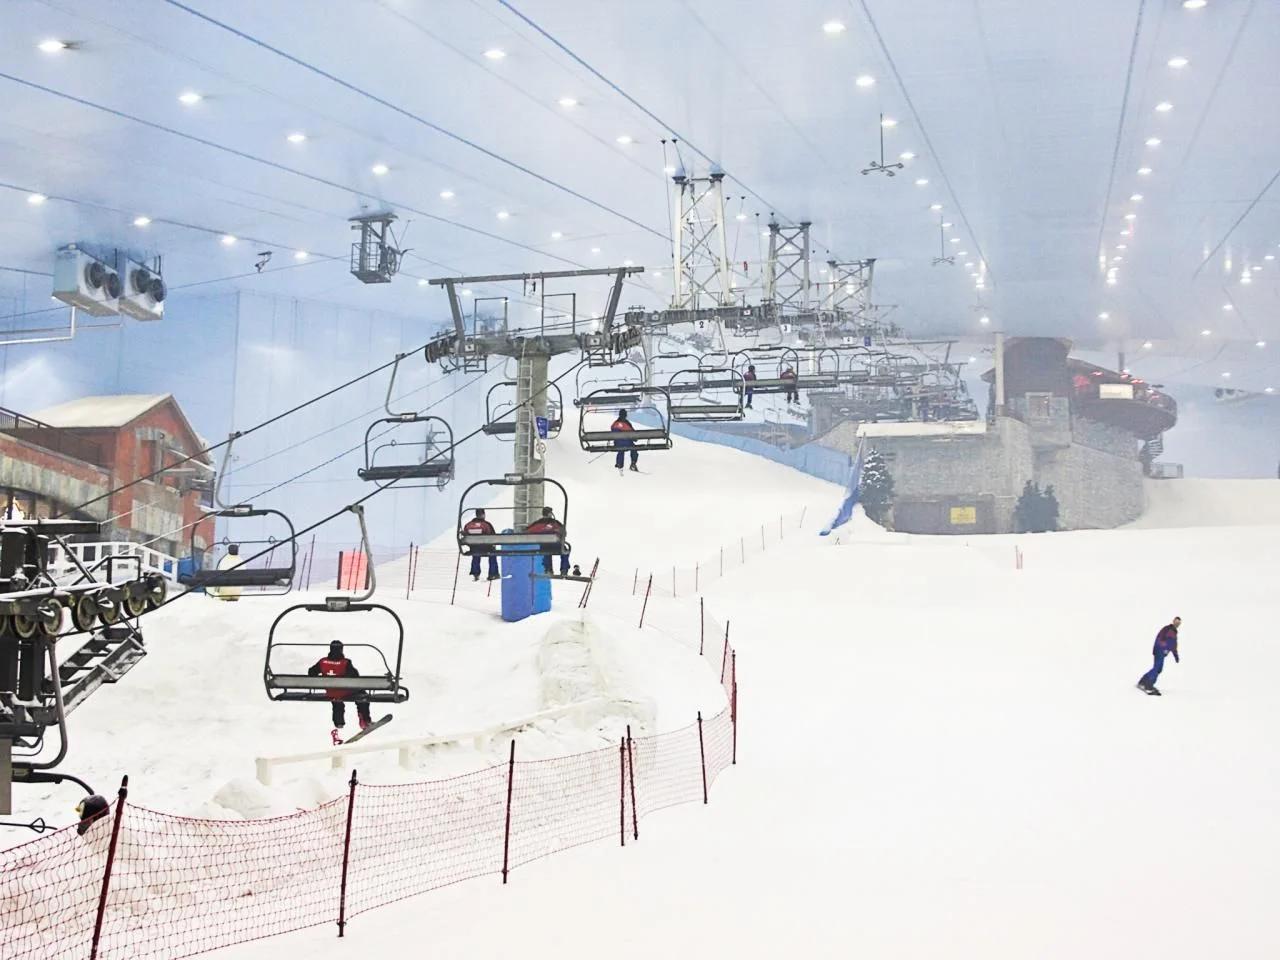 Zdjęcie nr 1 z galerii atrakcji Ski Dubai